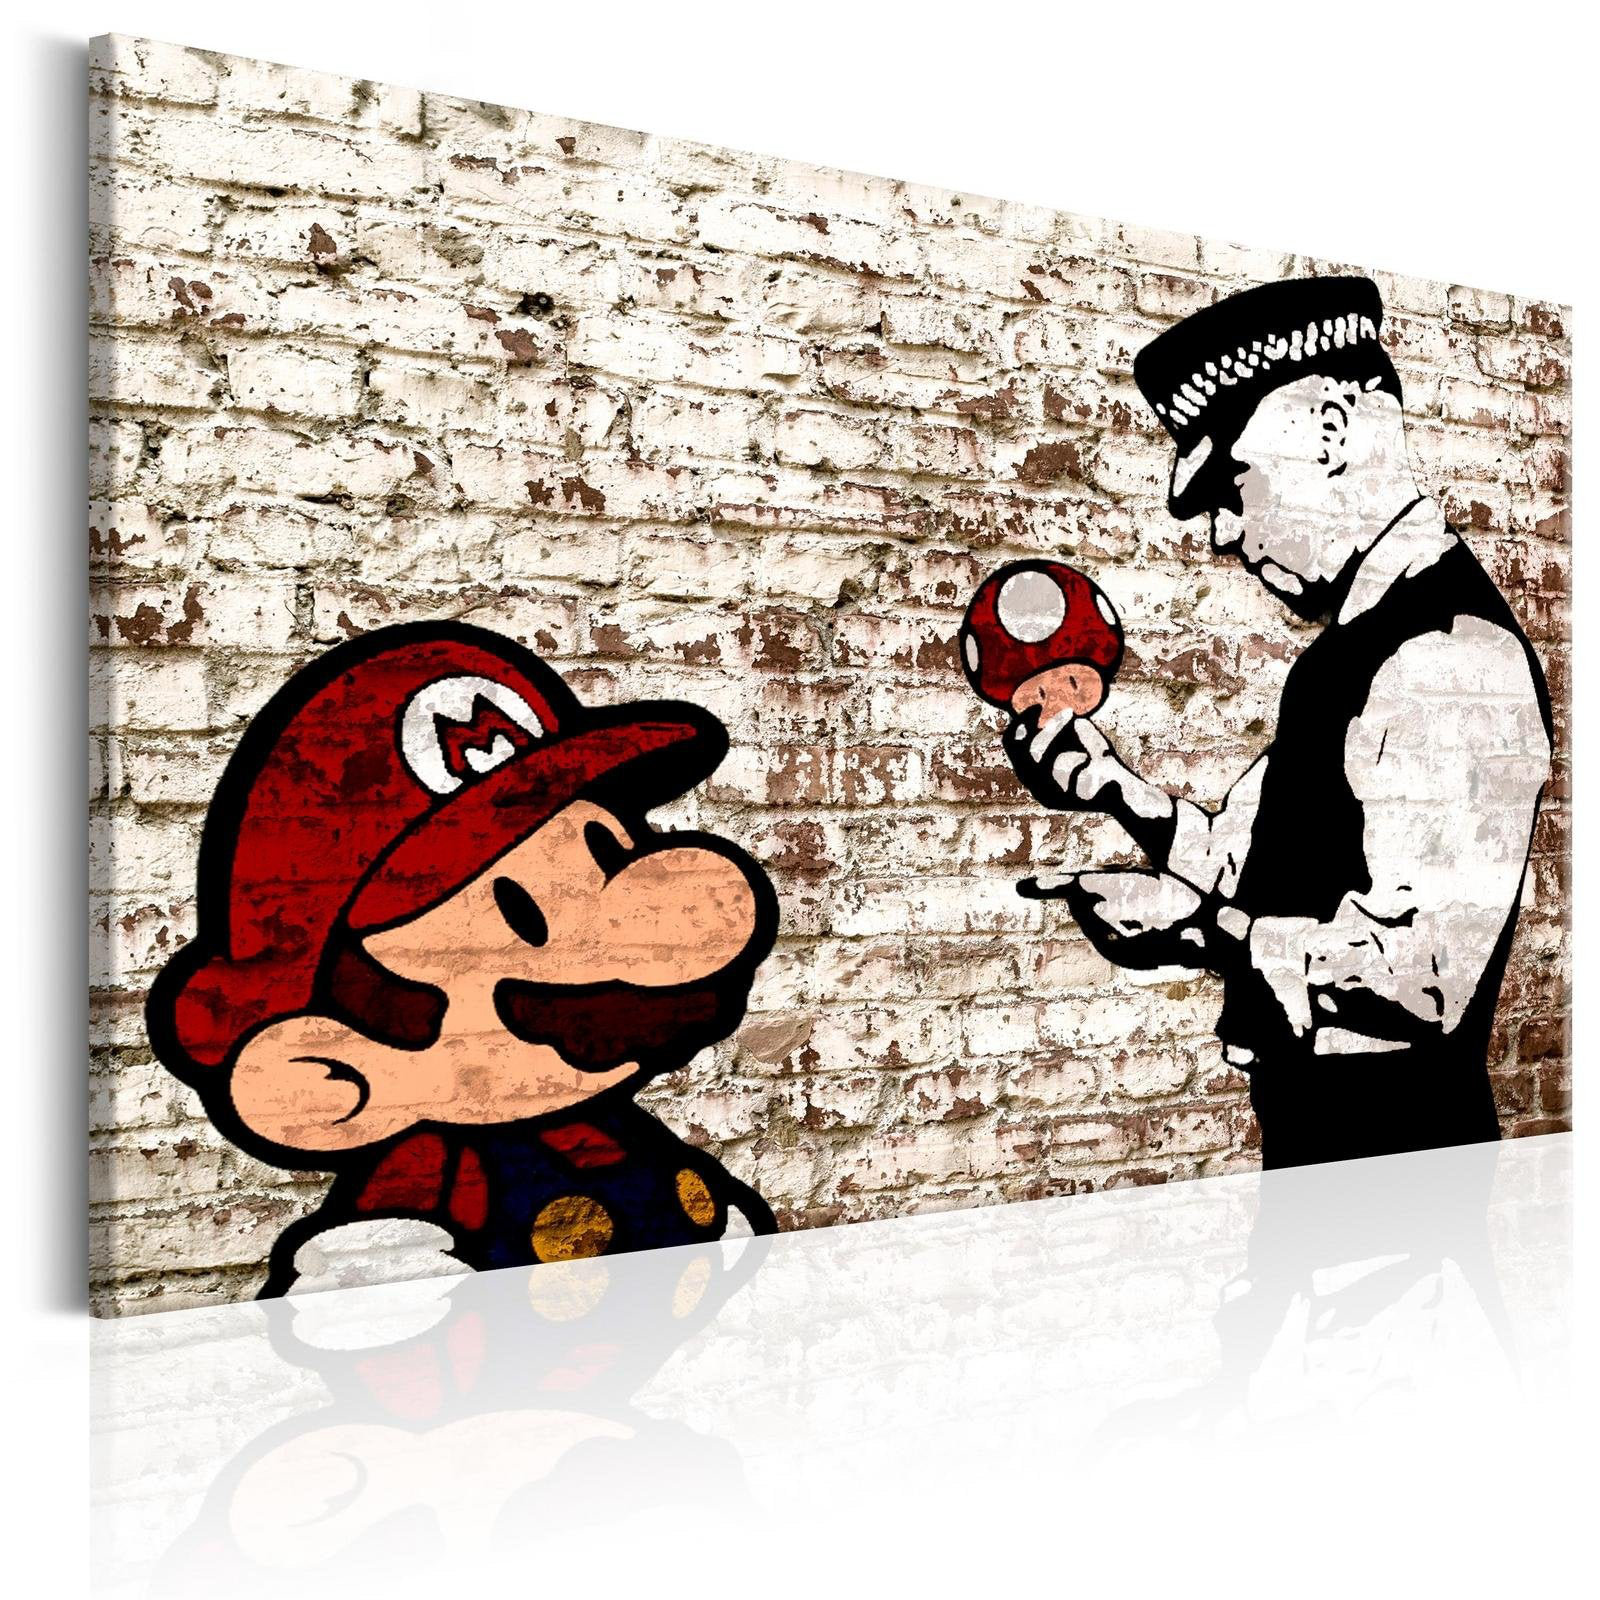 Mario and Cop by Banksy